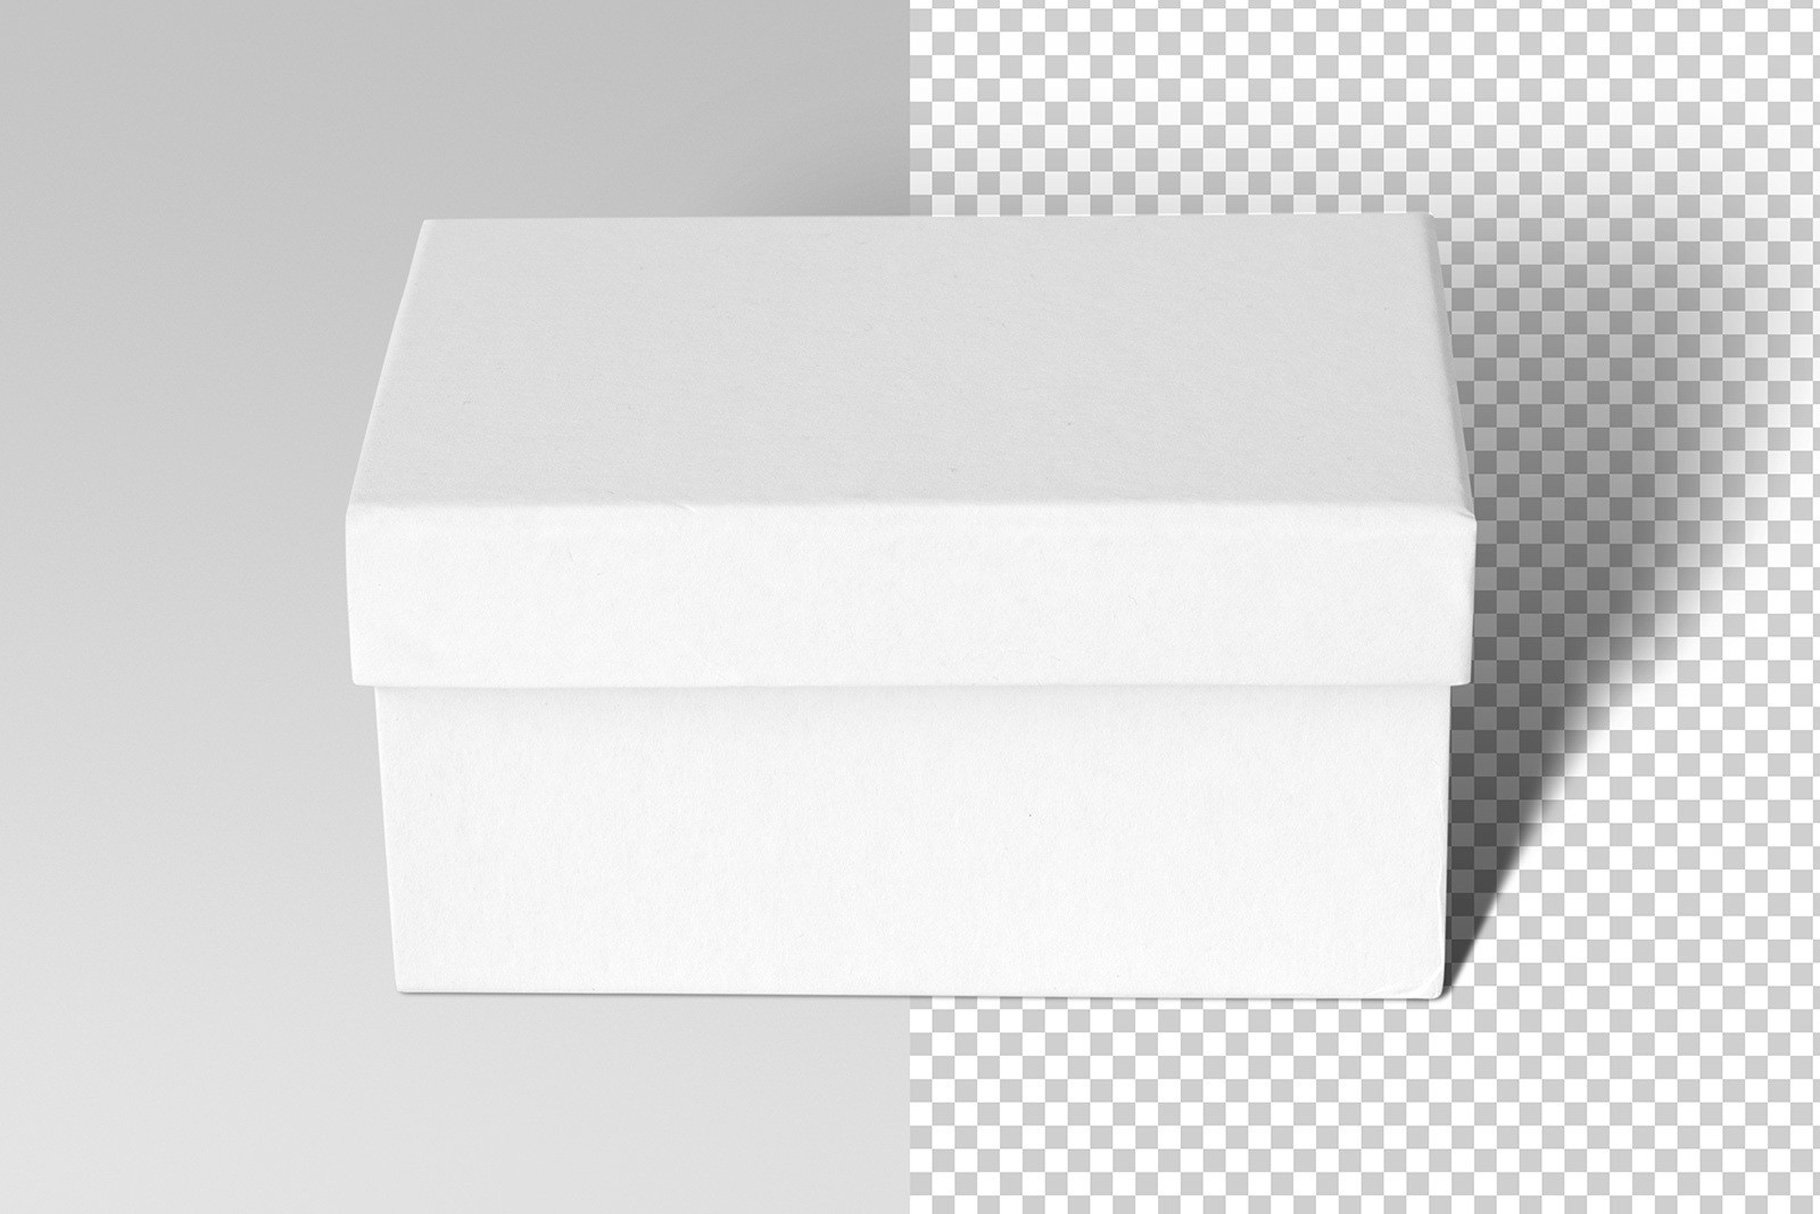 993 天地盖礼盒鞋盒包装盒PSD样机Paper Mache Craft Box Mockups